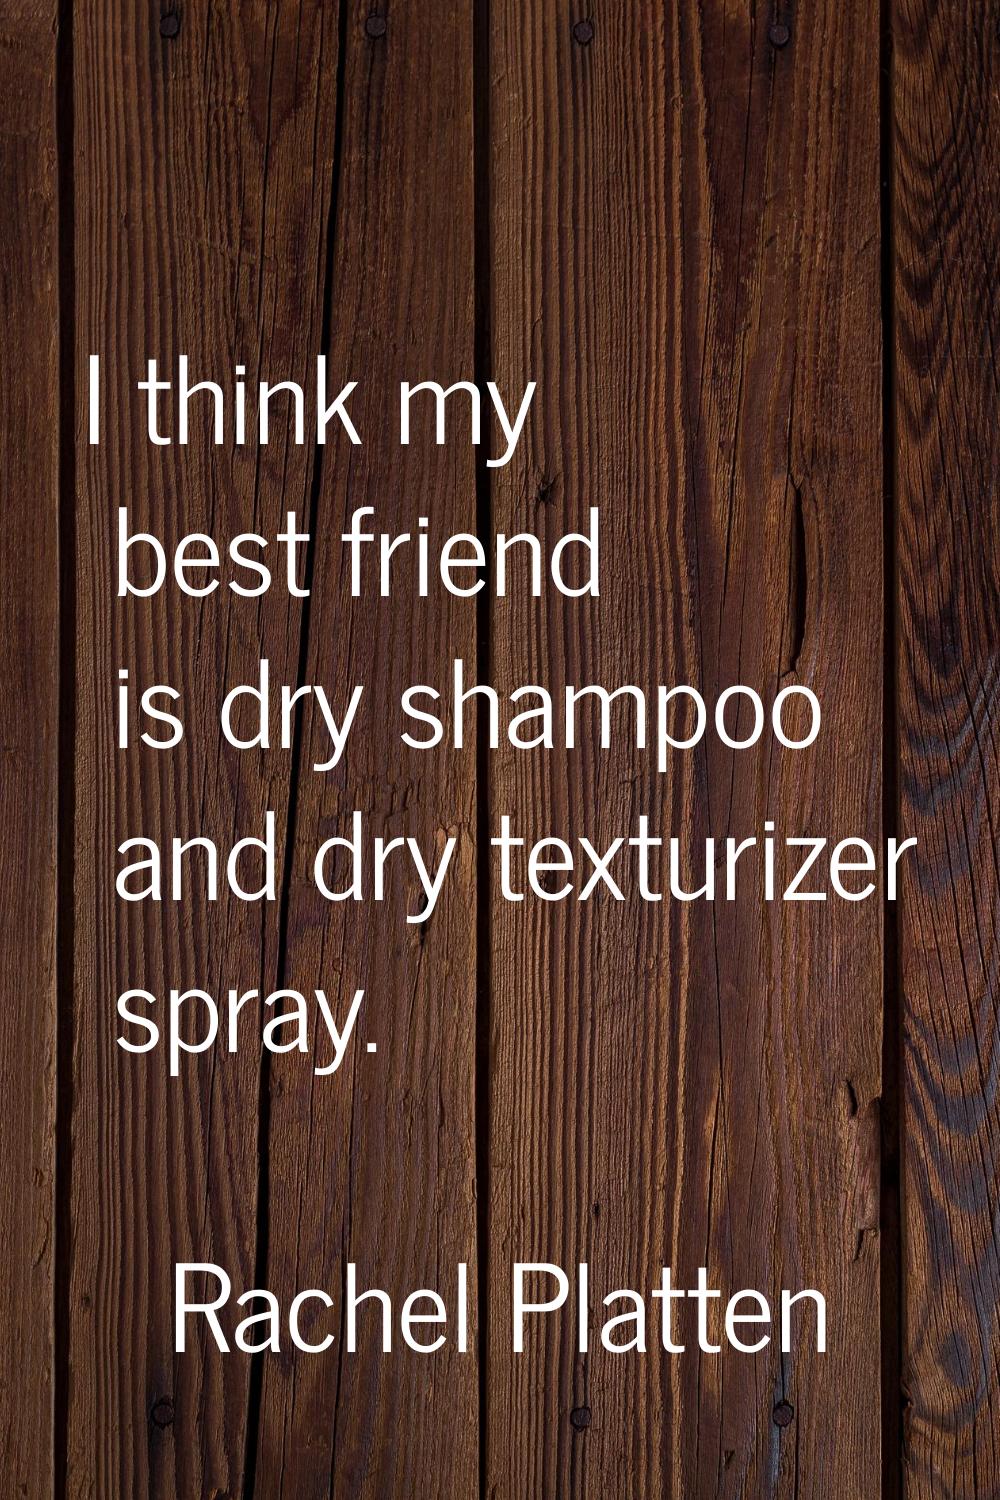 I think my best friend is dry shampoo and dry texturizer spray.